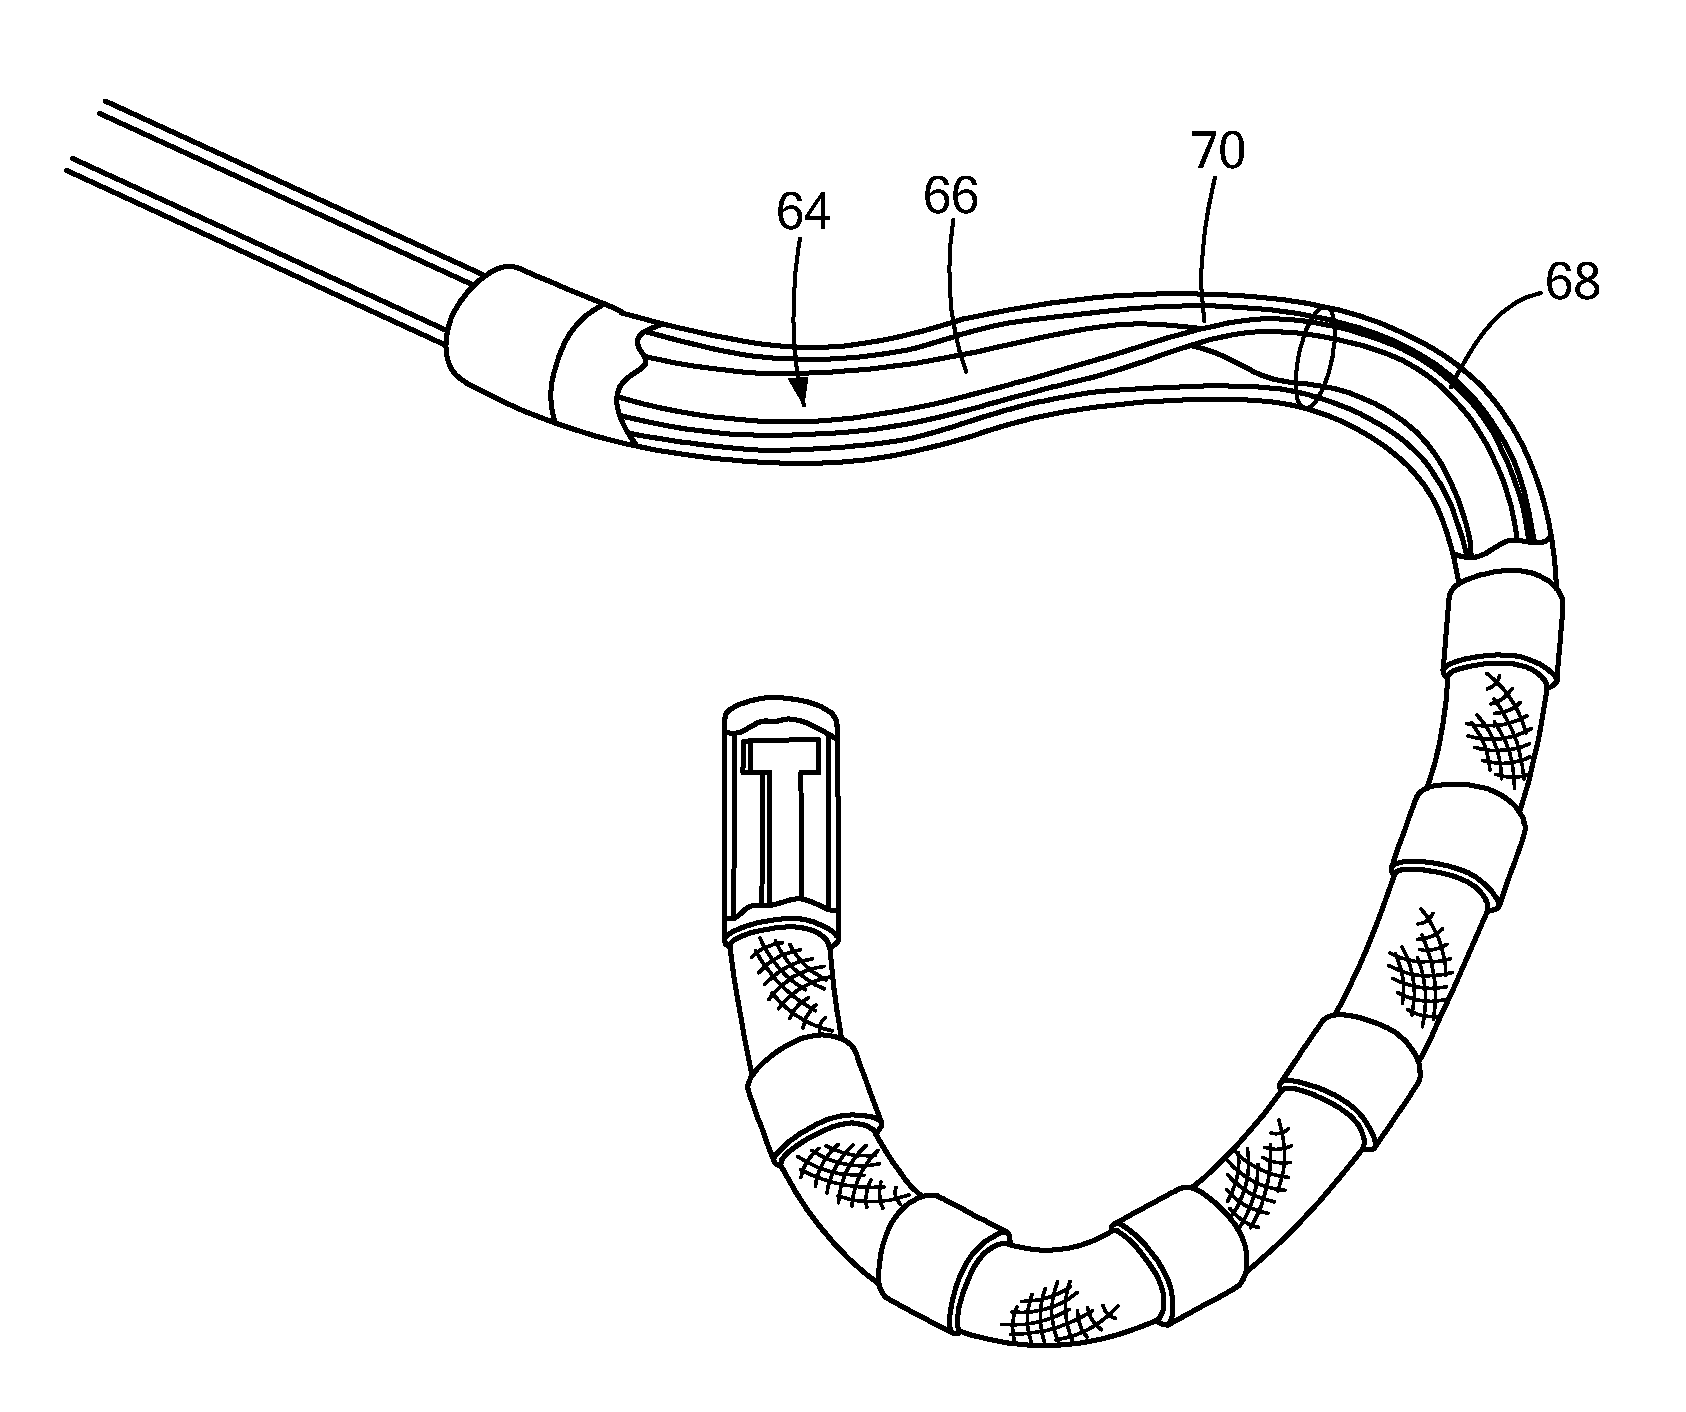 Bi-modal catheter steering mechanism